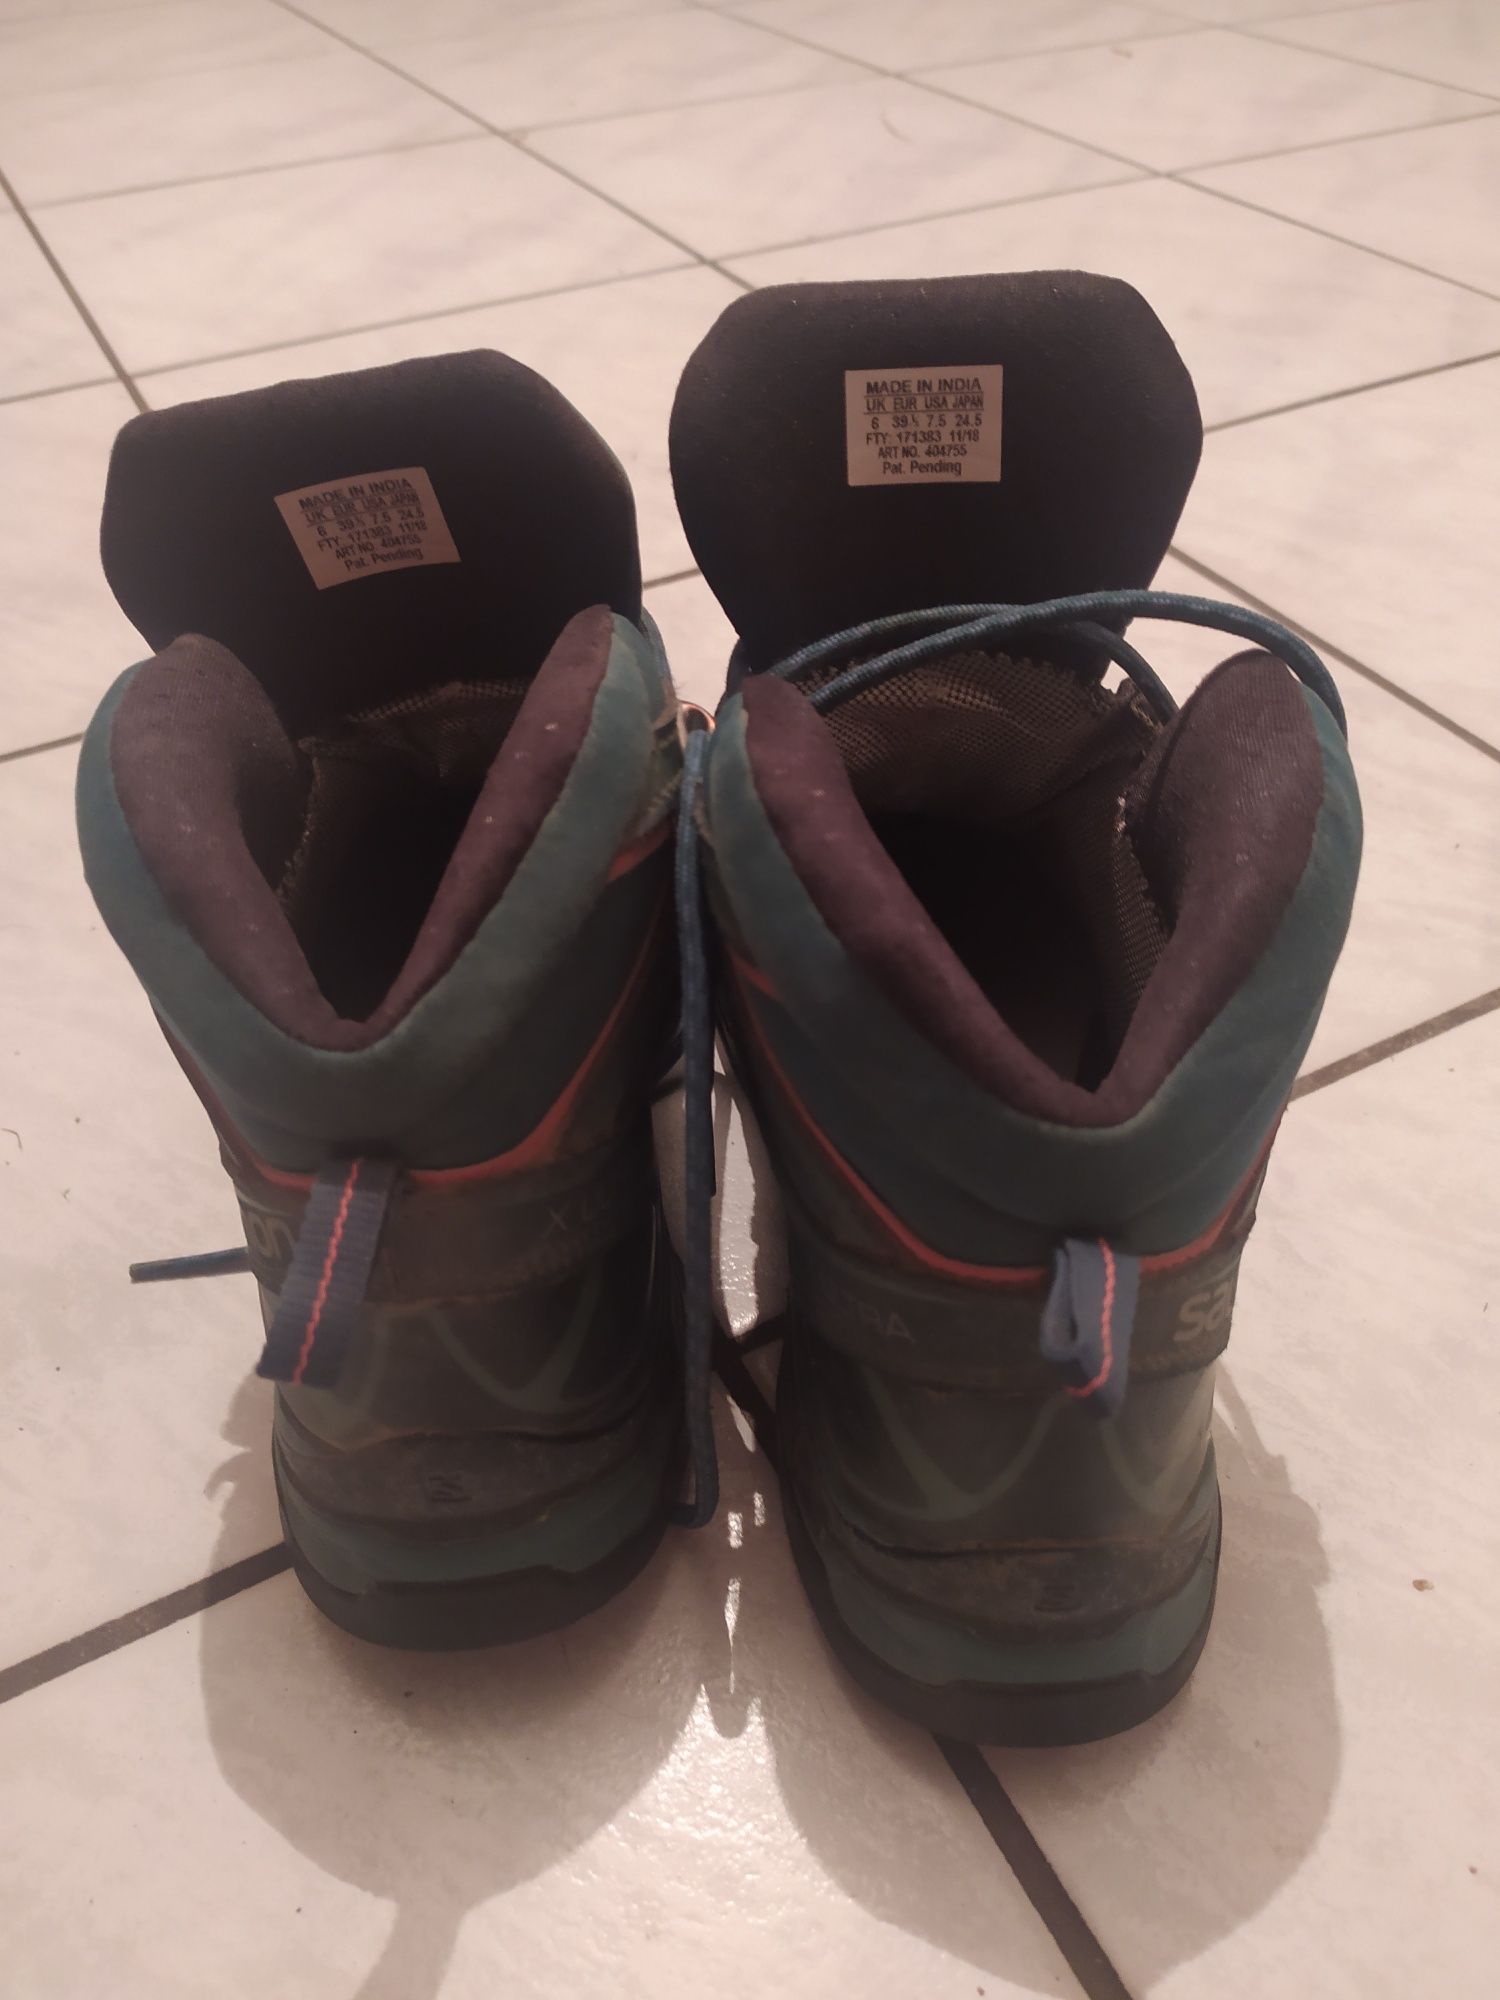 Salomon buty górskie damskie 39